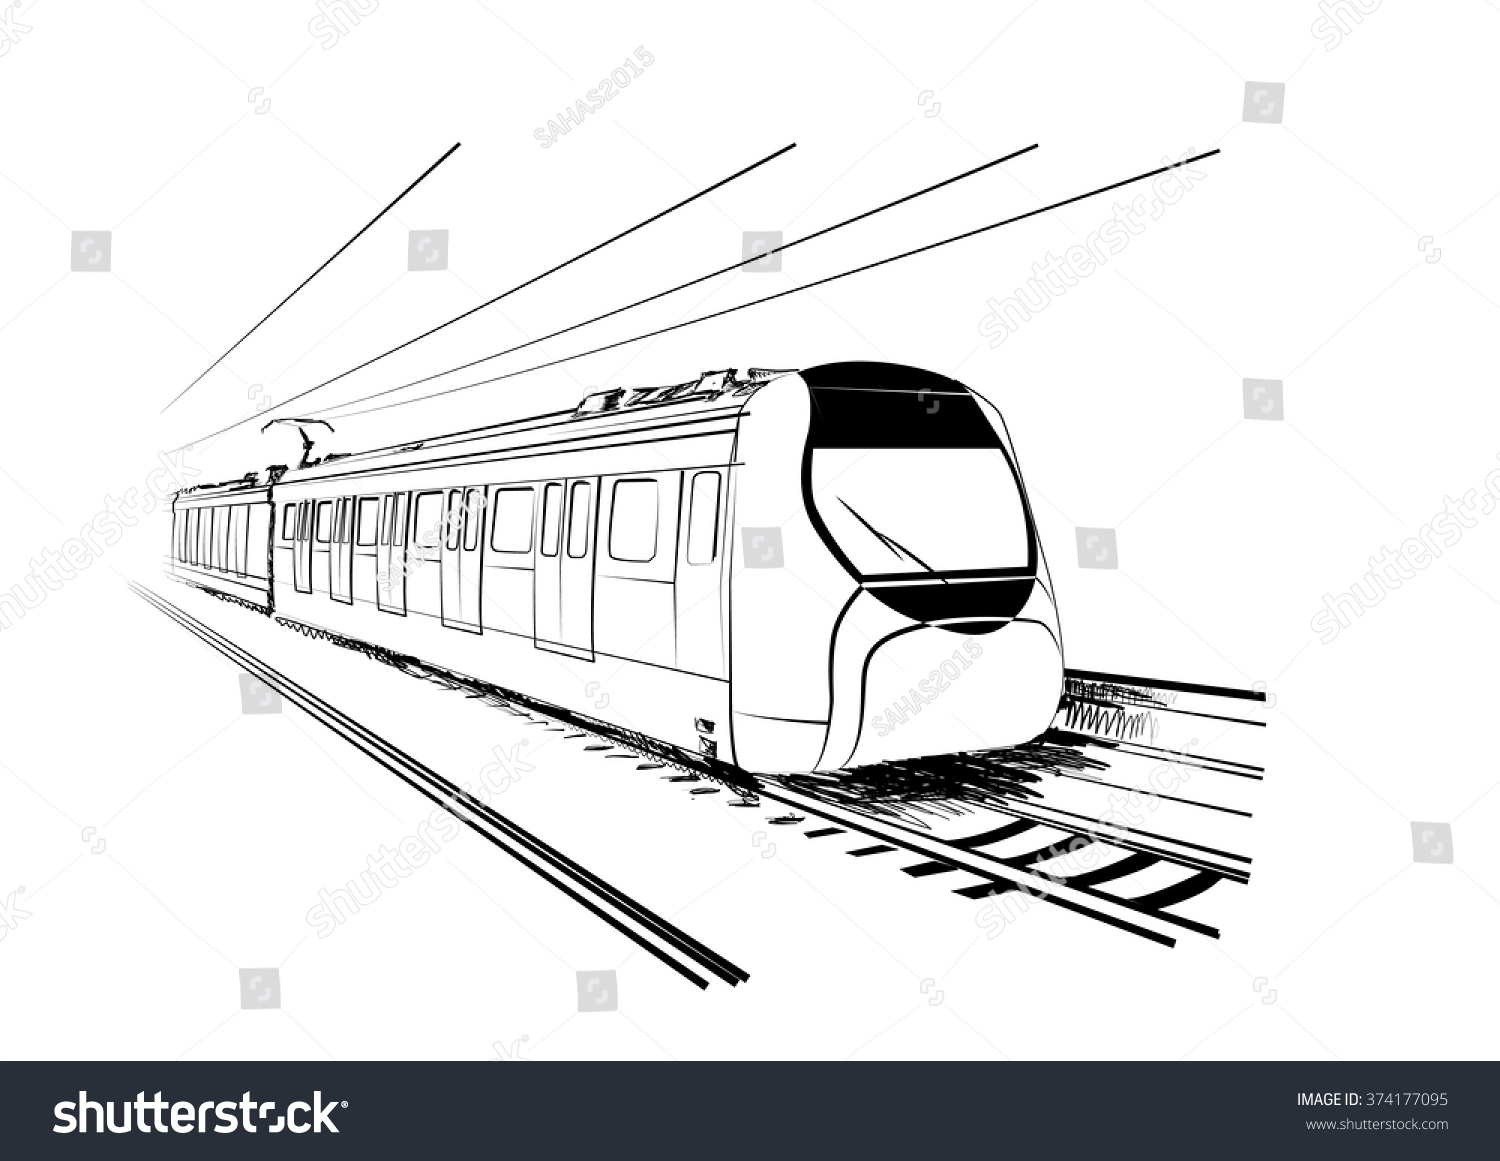 Sketch of Hong Kong Train - Royalty Free Stock Vector 374177095 ...